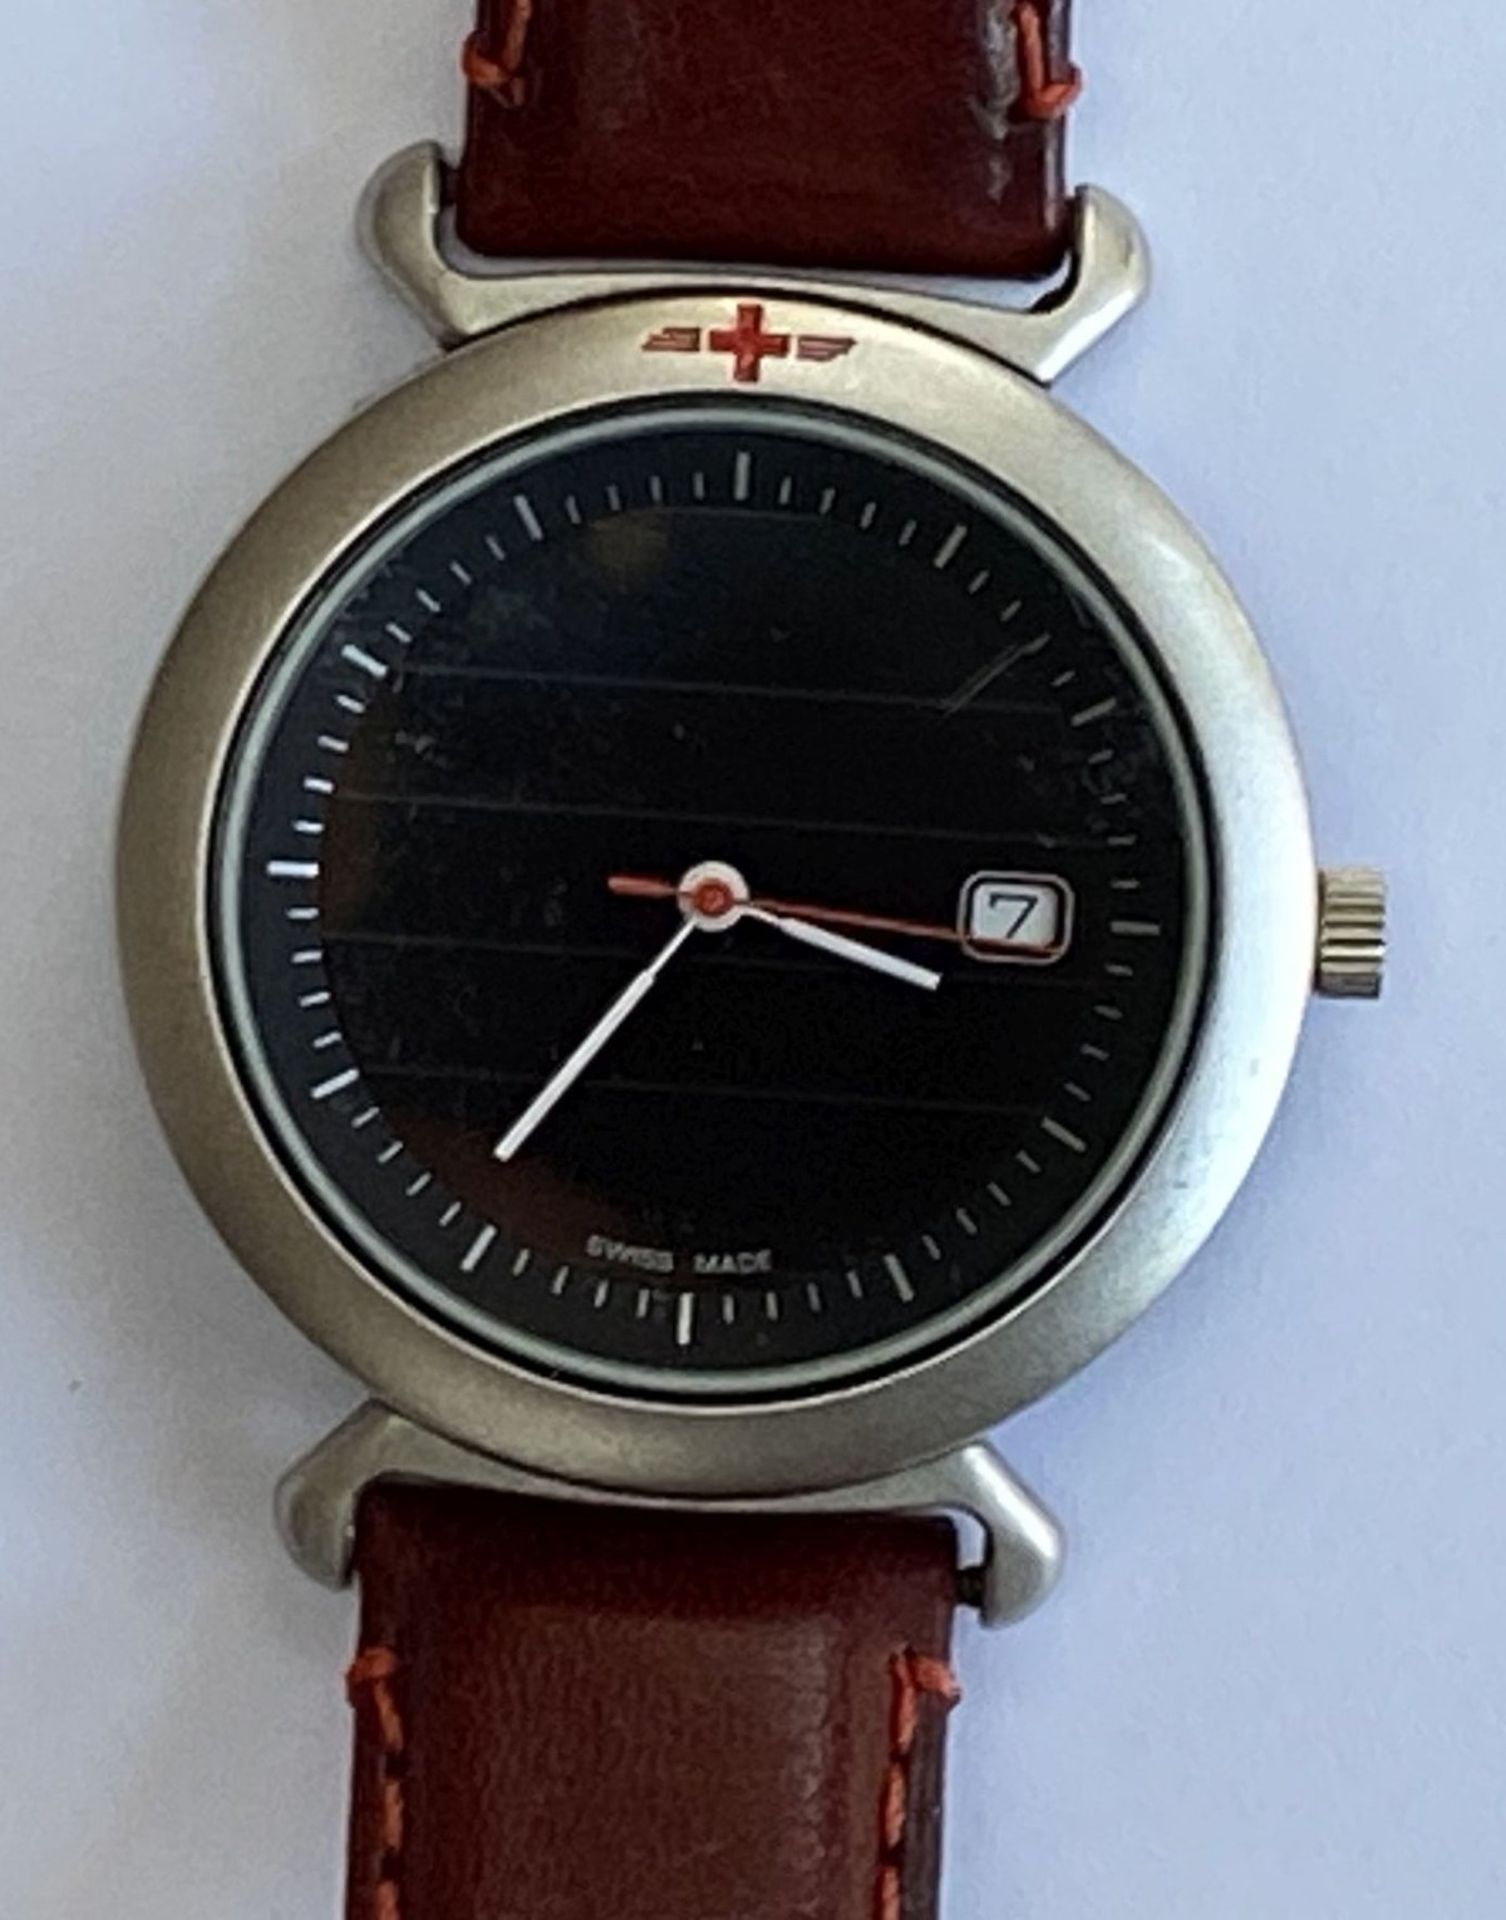 Schweizer Armbanduhr, Quarz, kein Hersteller?, nur Schweizer Kreuz, Werk läuft, gut erhalten, - Image 2 of 5